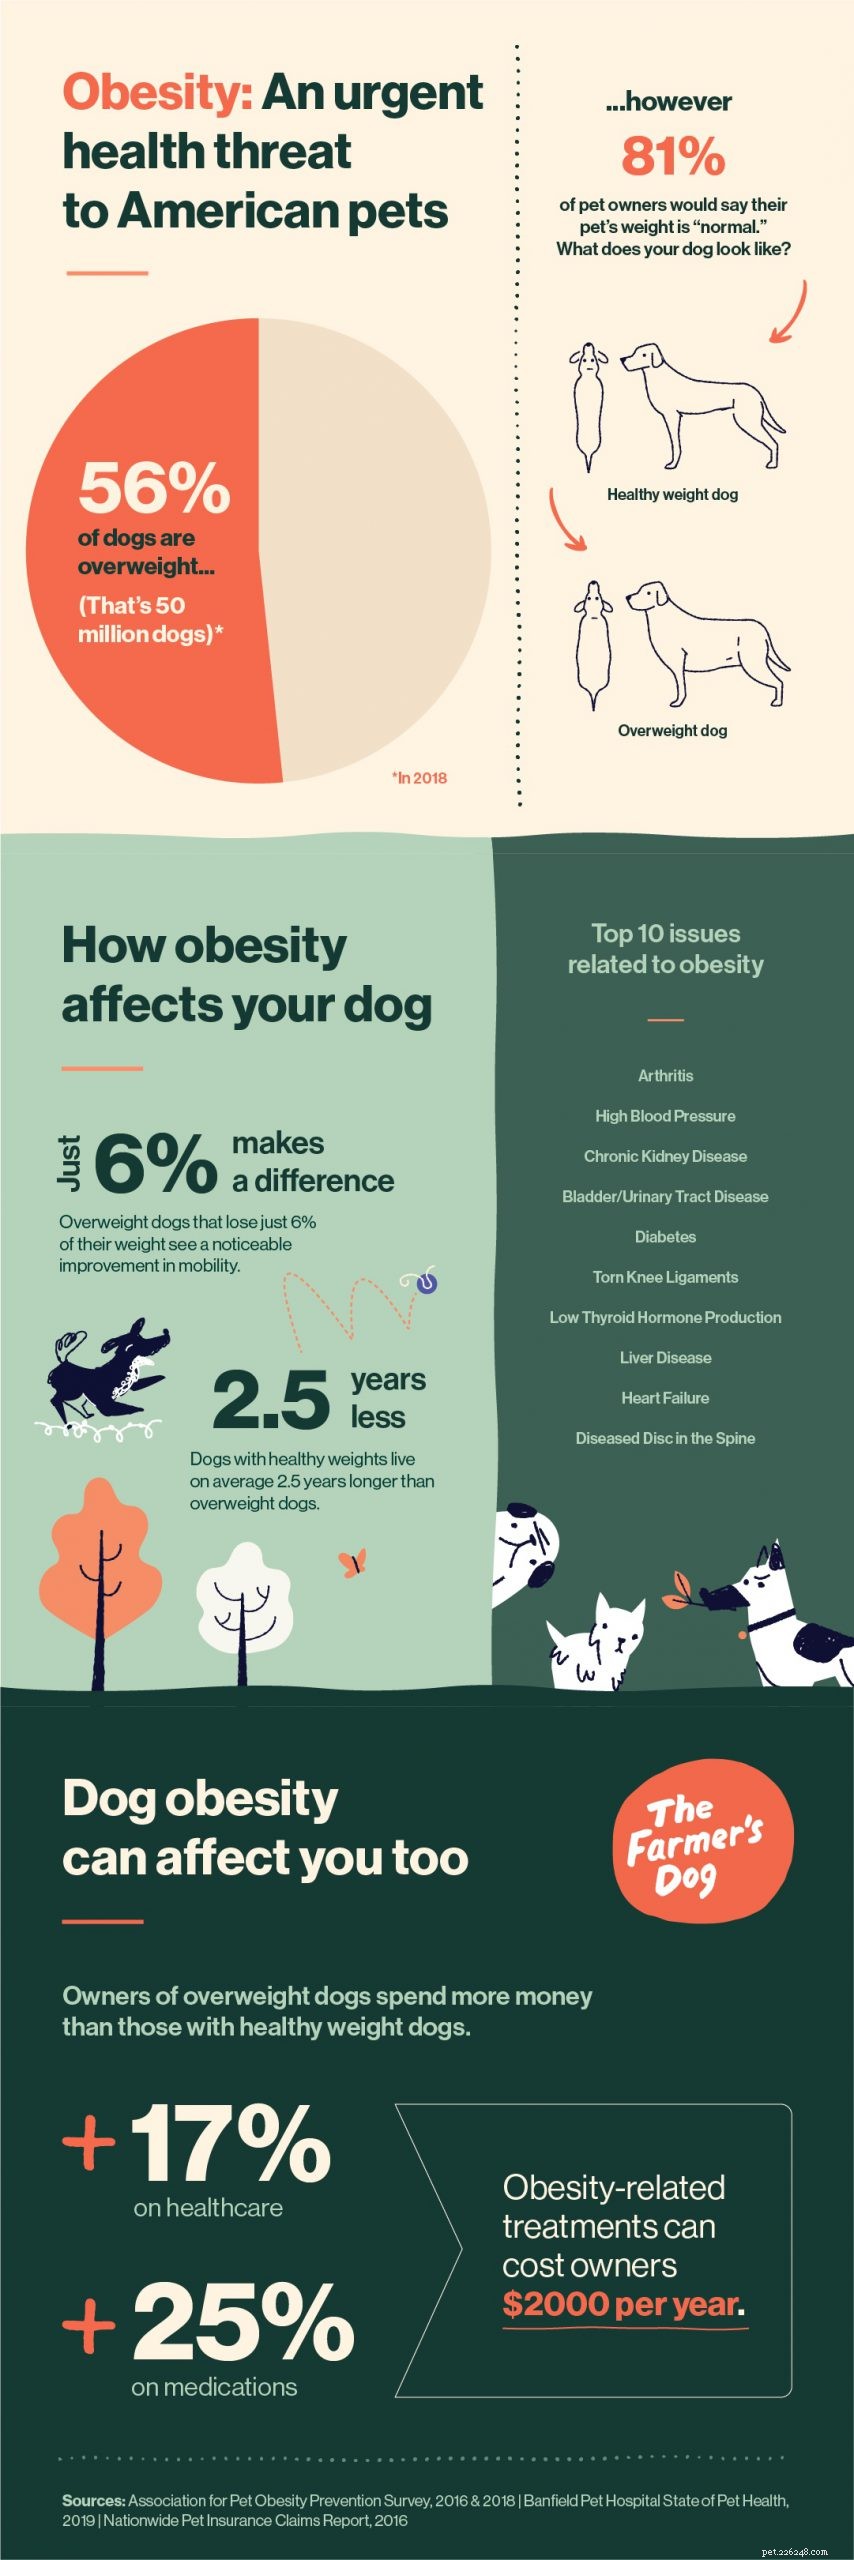 개 비만:눈에 보이지 않는 엄청난 건강 위협